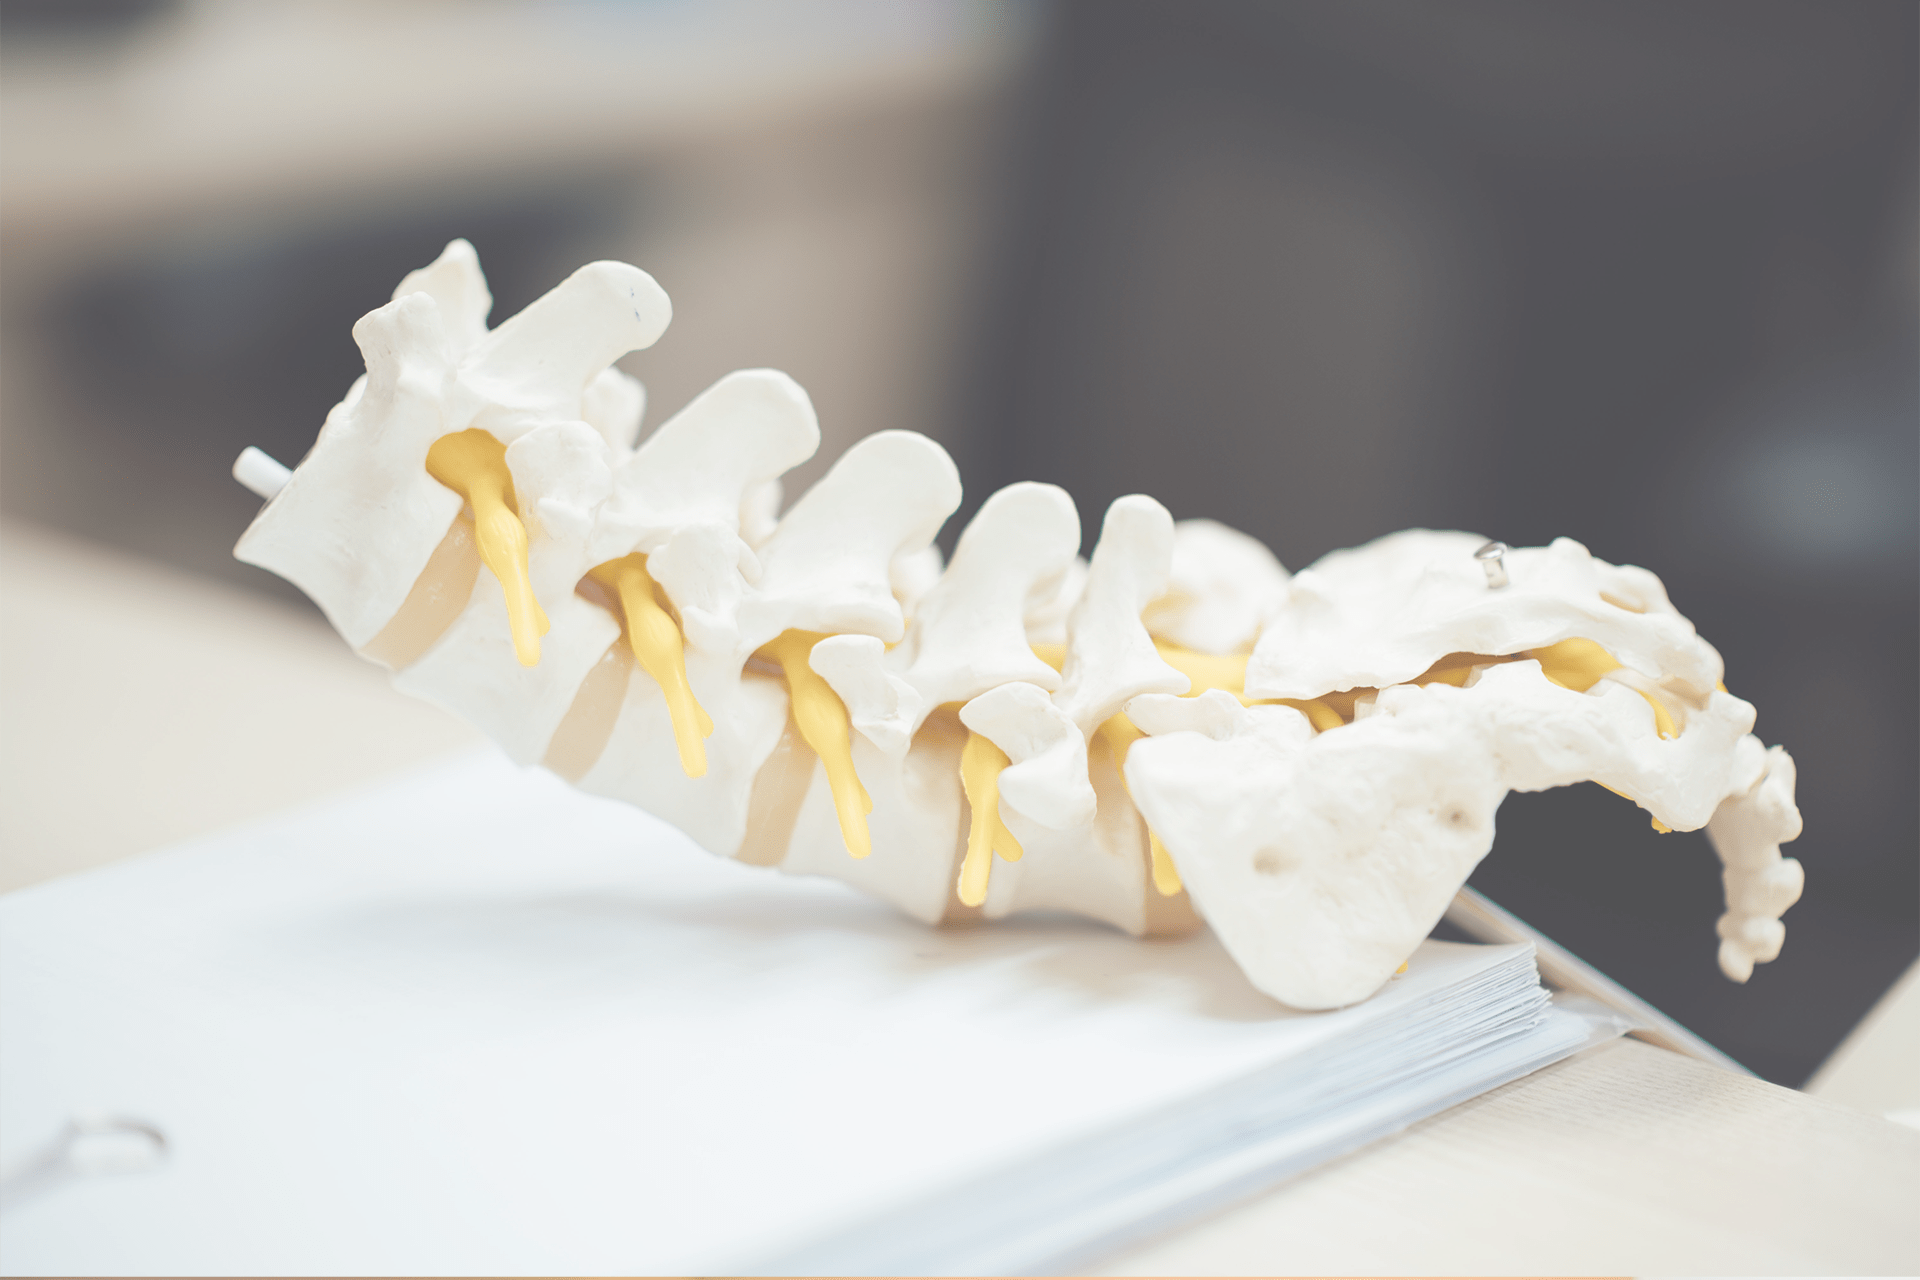 Artificial spinal bones